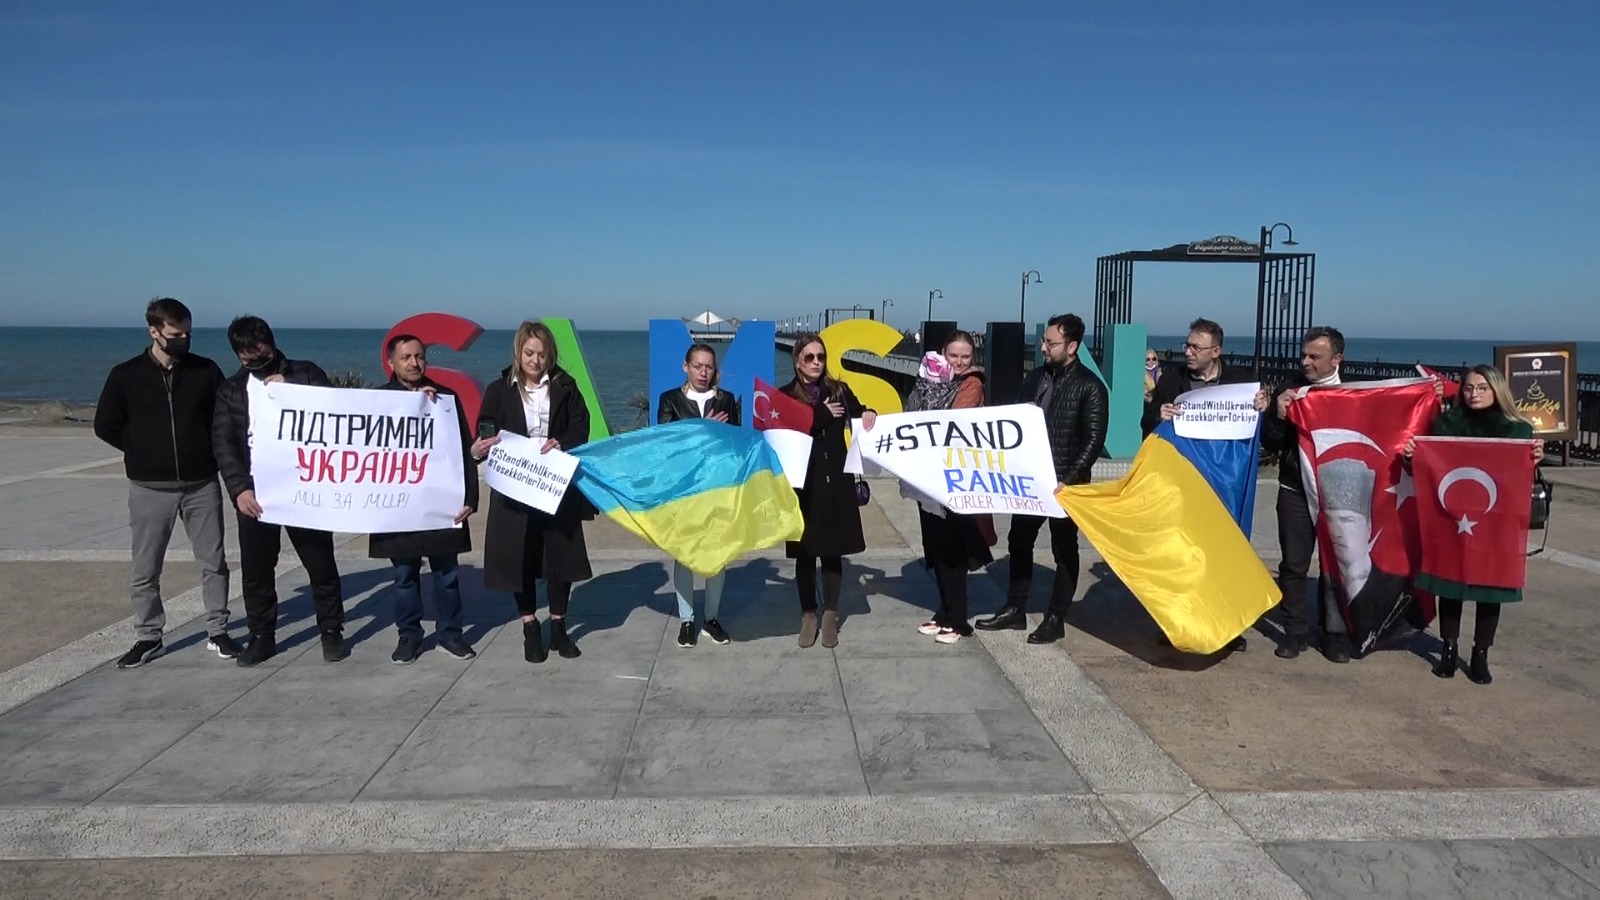 Samsun'da yaşayan Ukraynalılardan Rusya protestosu